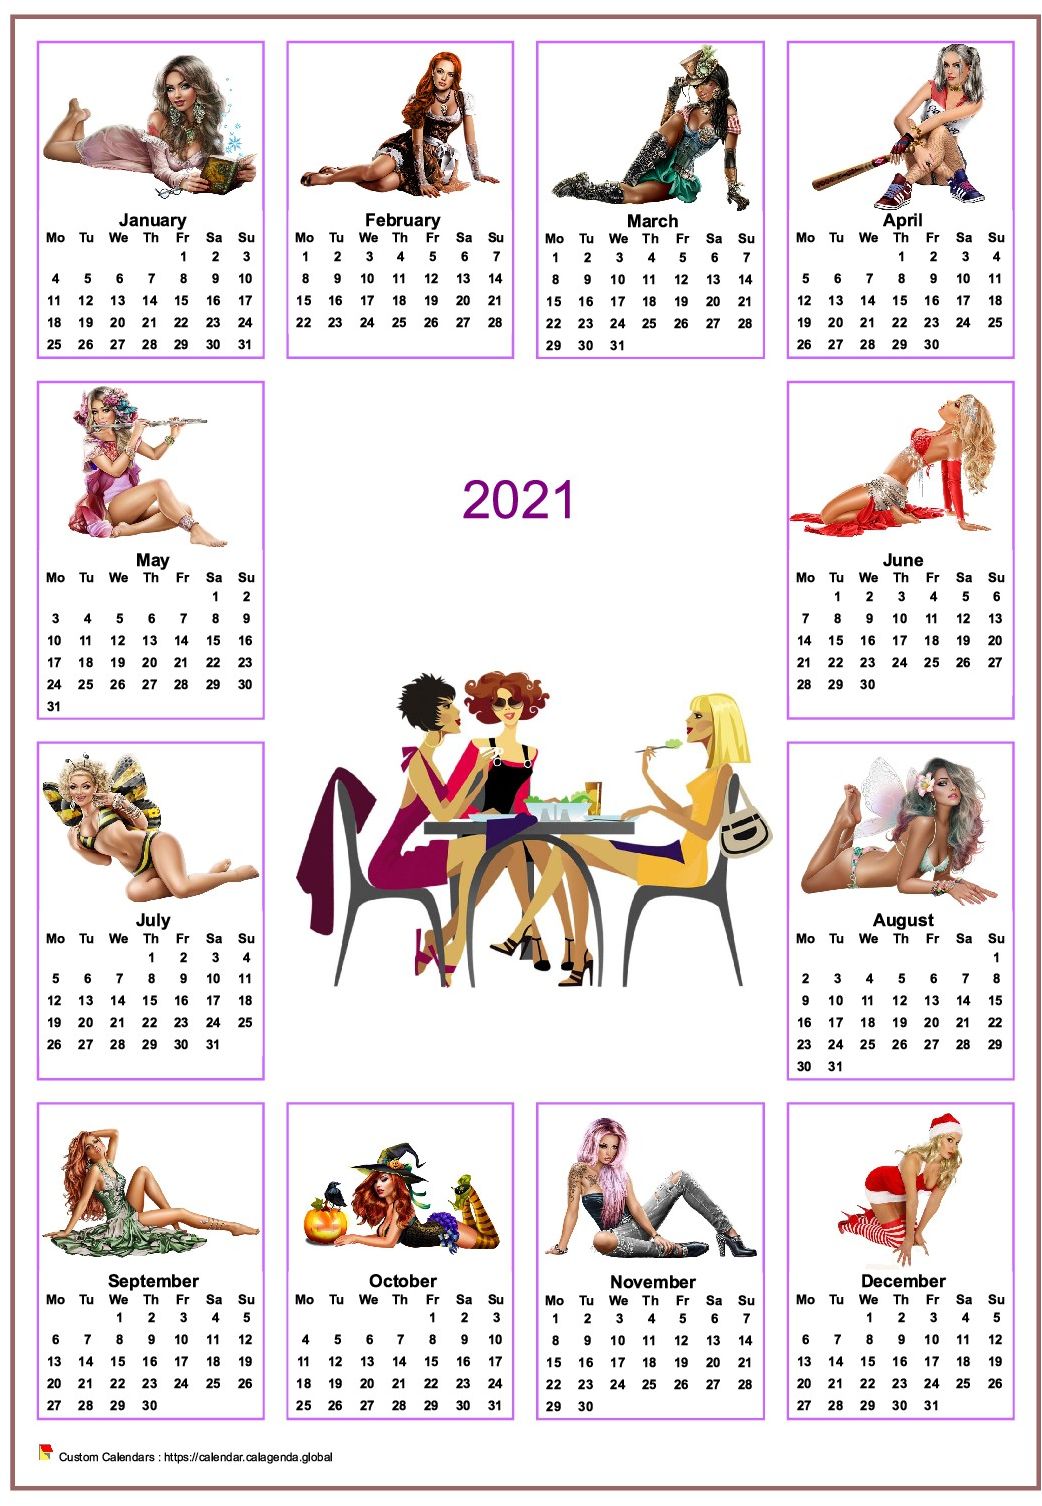  2021 annual calendar tubes women